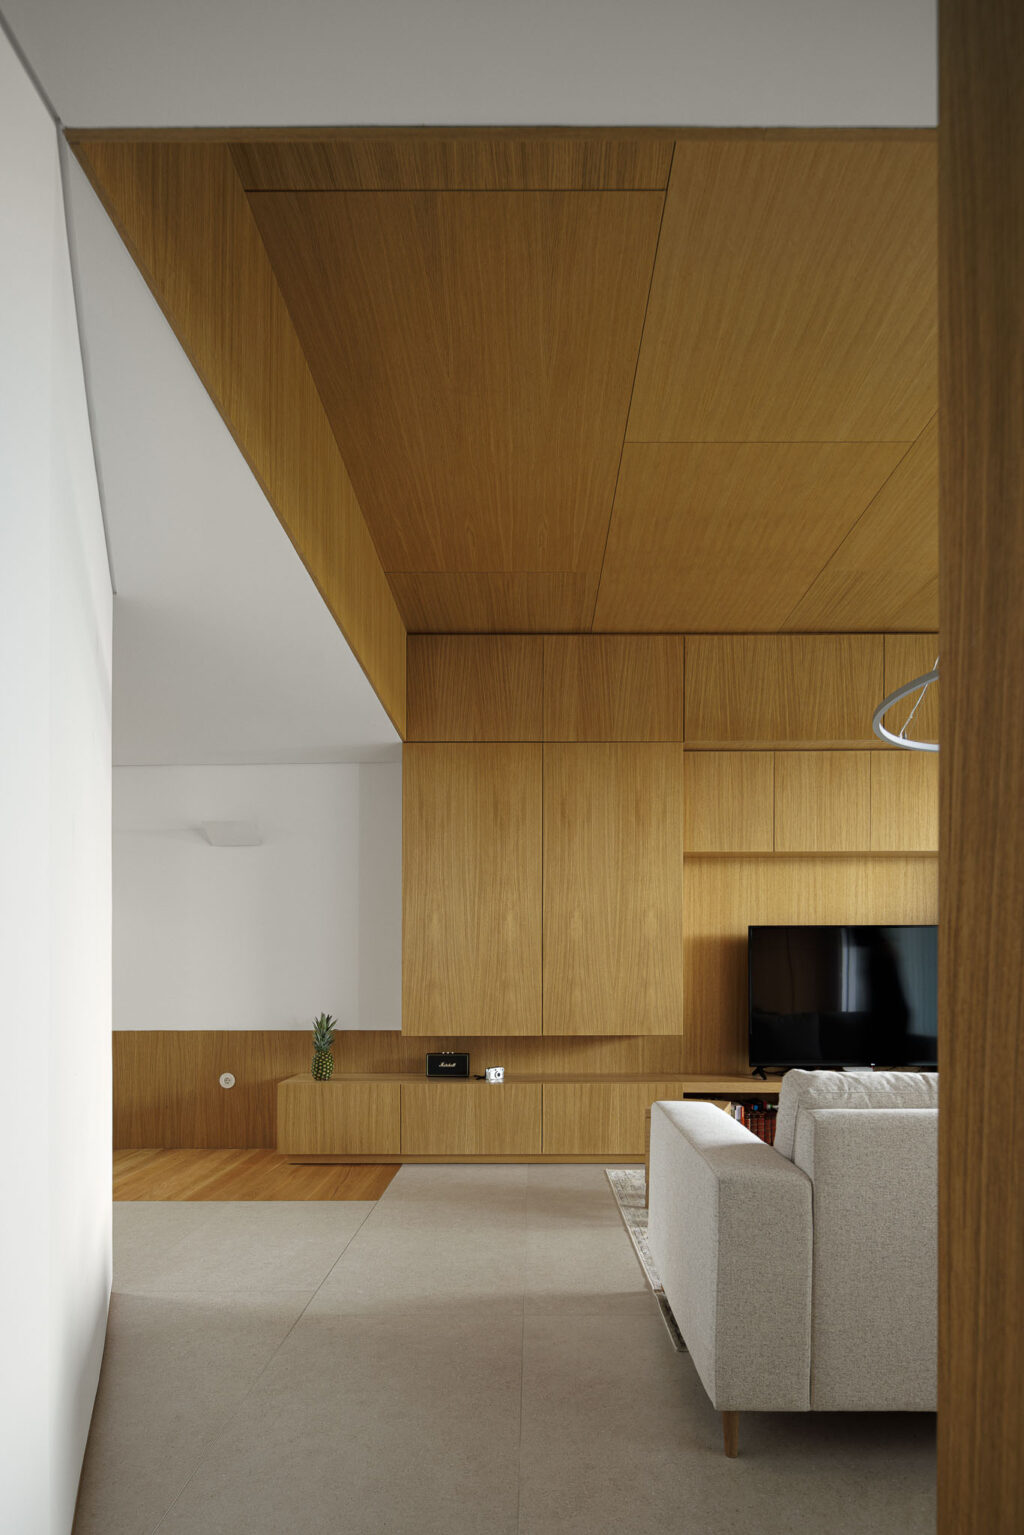 Arsitektur yang menantang konvensi dan menciptakan ruang emosional. Forte House oleh Pema Studio